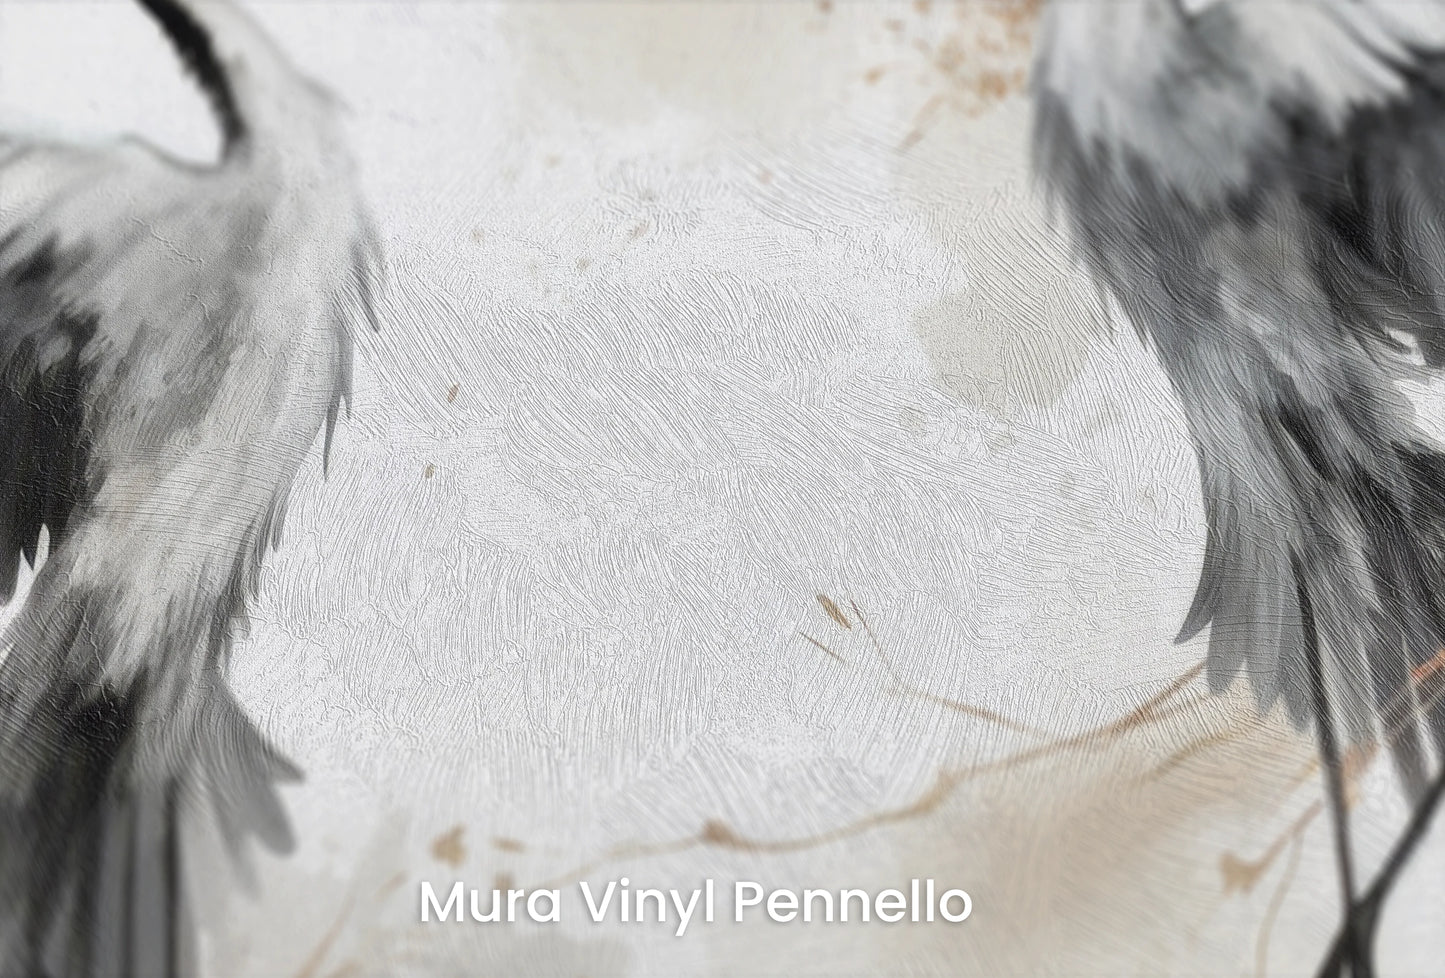 Zbliżenie na artystyczną fototapetę o nazwie Wings of Freedom na podłożu Mura Vinyl Pennello - faktura pociągnięć pędzla malarskiego.